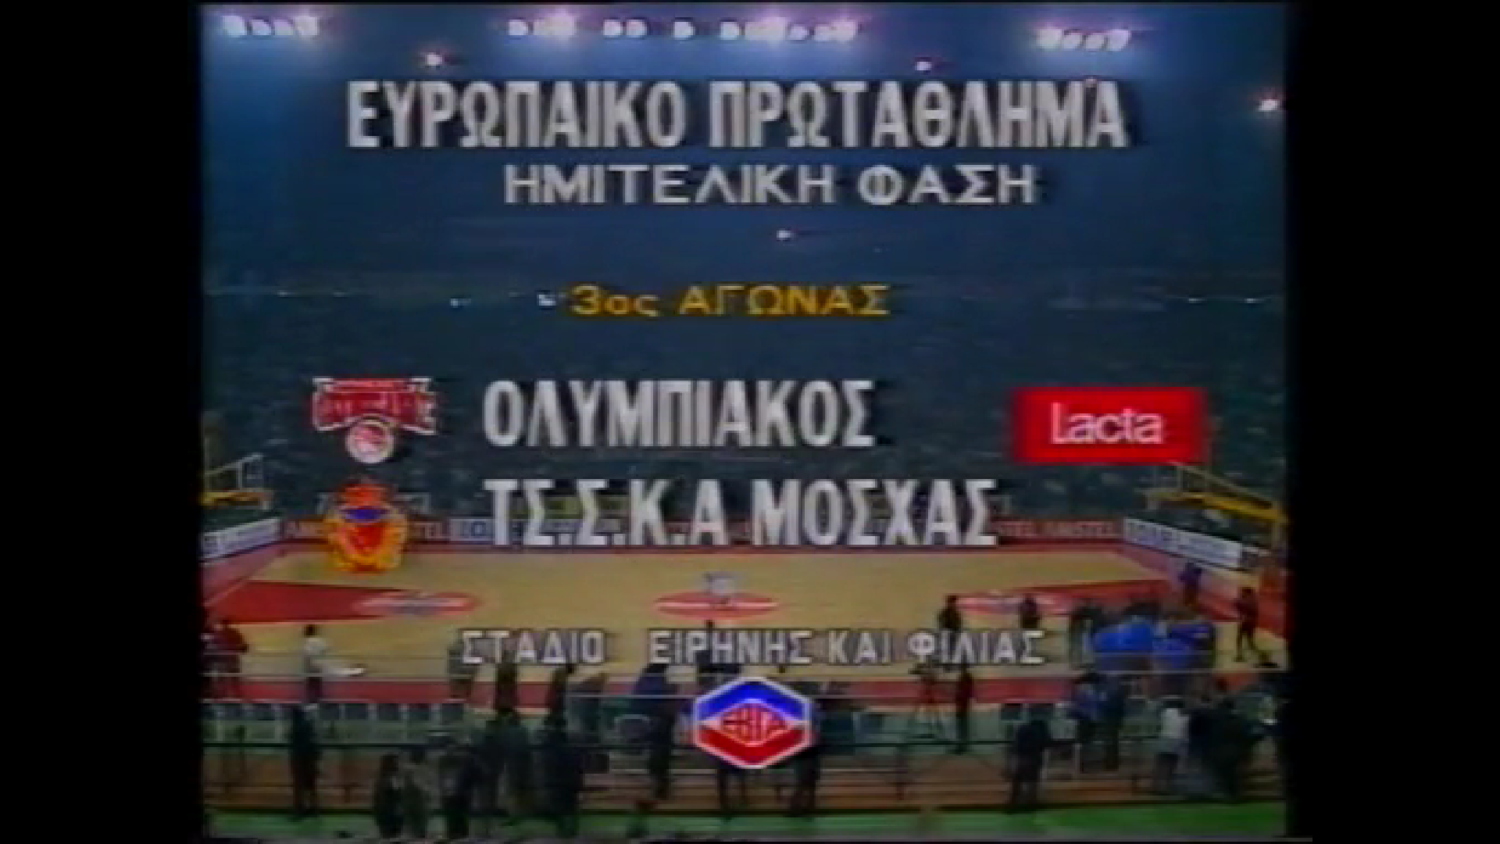 Евролига 1994/1995. 1/4 финала. Олимпиакос - ЦСКА. Игра 3